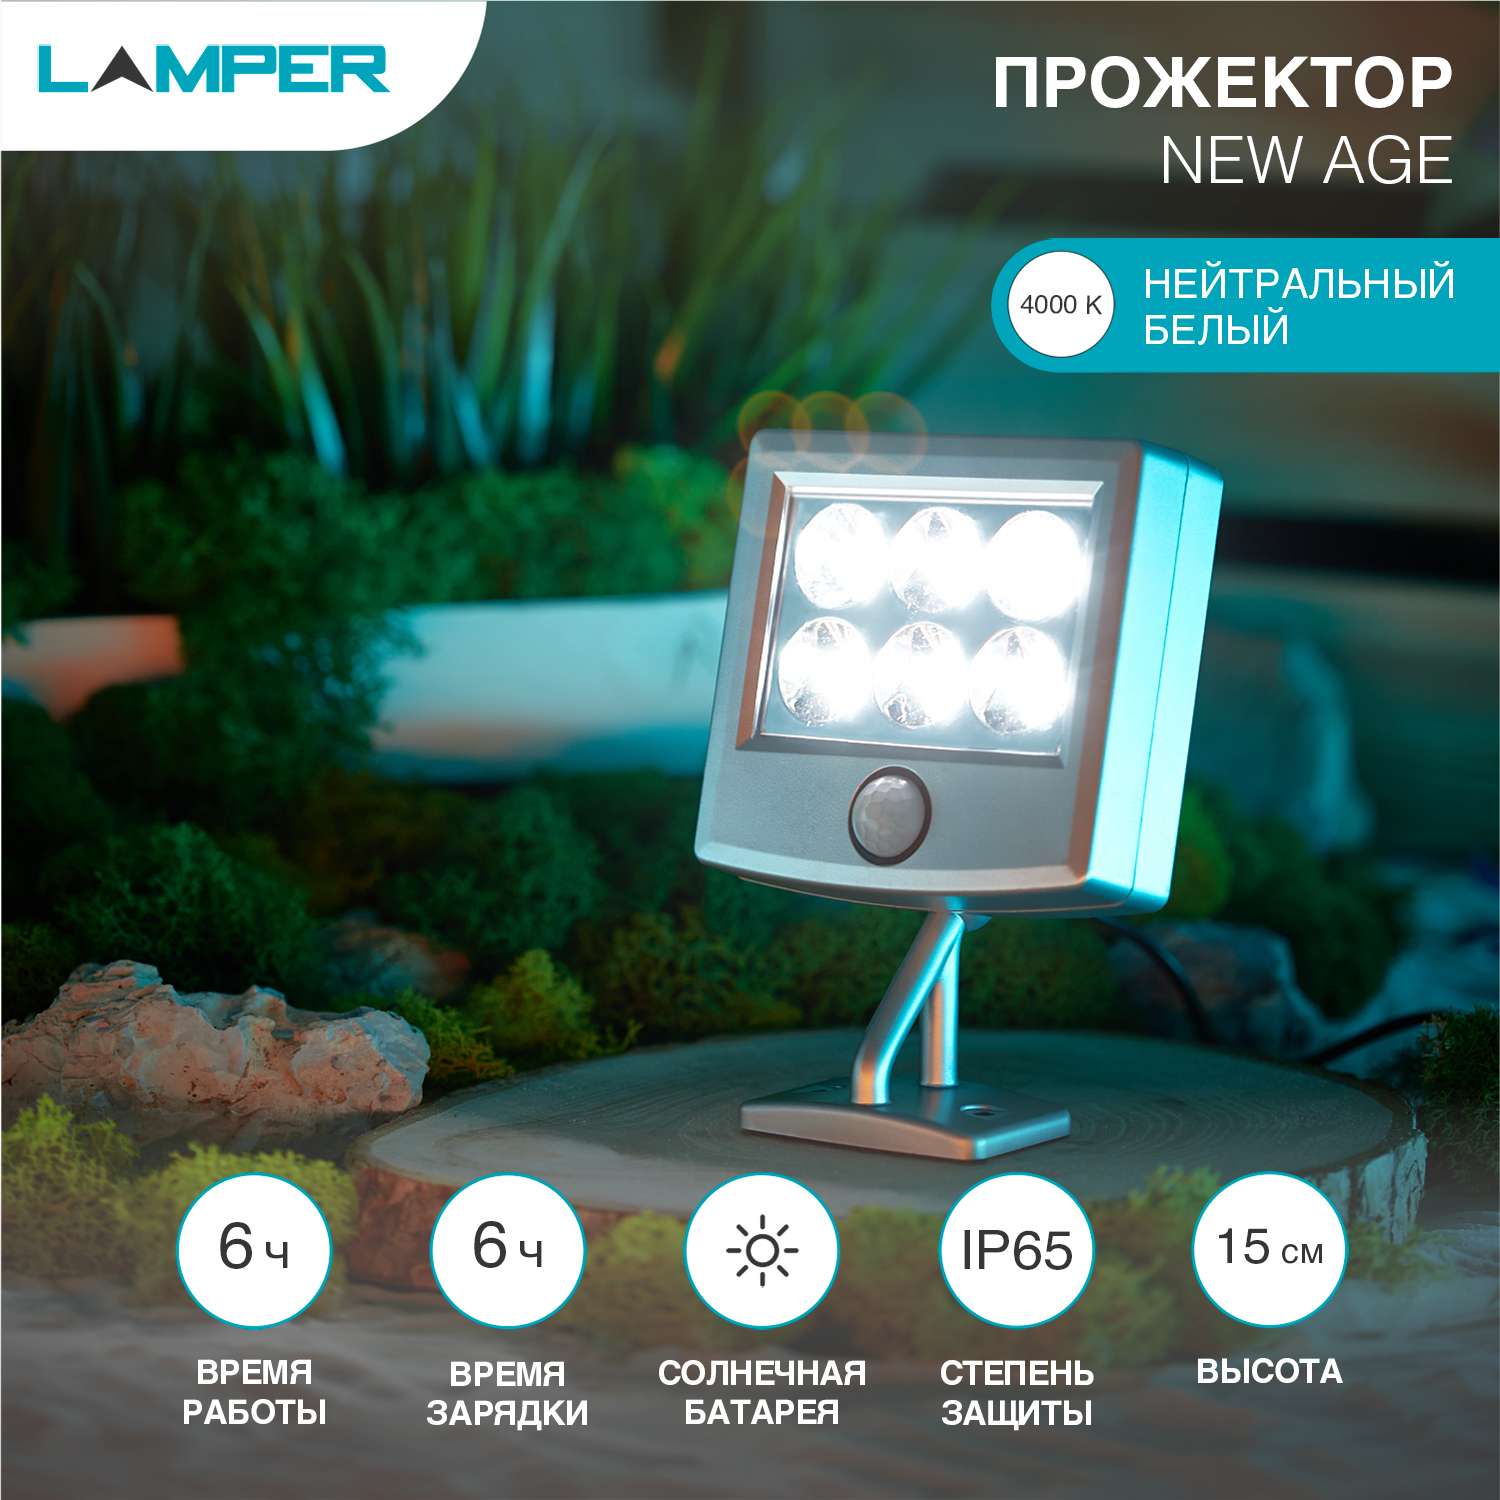 Светильник LAMPER 15 см поворотный с аккумулятором и выносной солнечной панелью - фото 1